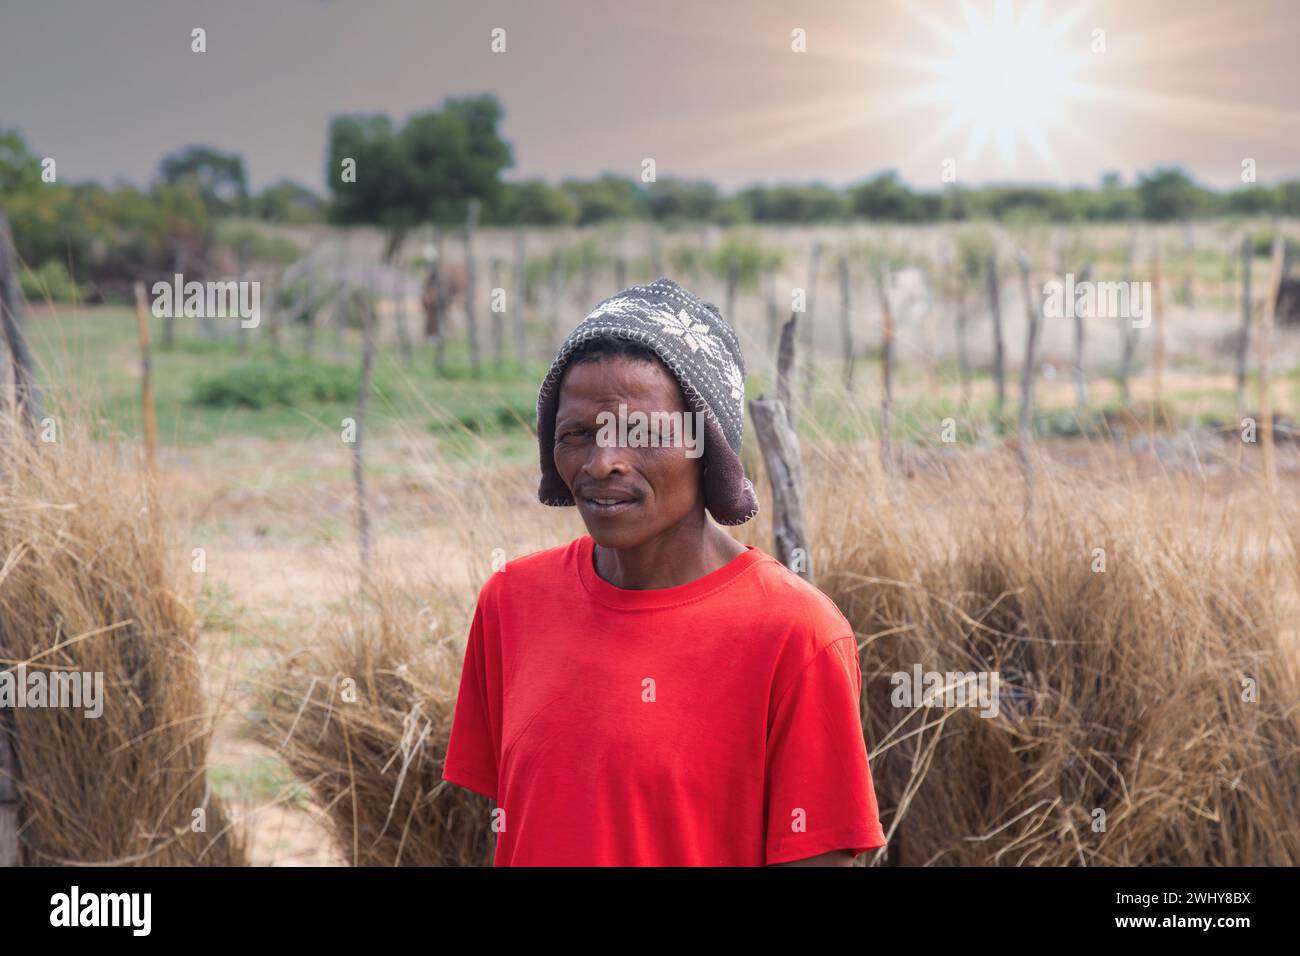 Village san african man, trasferito dal Kalahari a nuovi villaggi, con indosso un berretto, Foto Stock